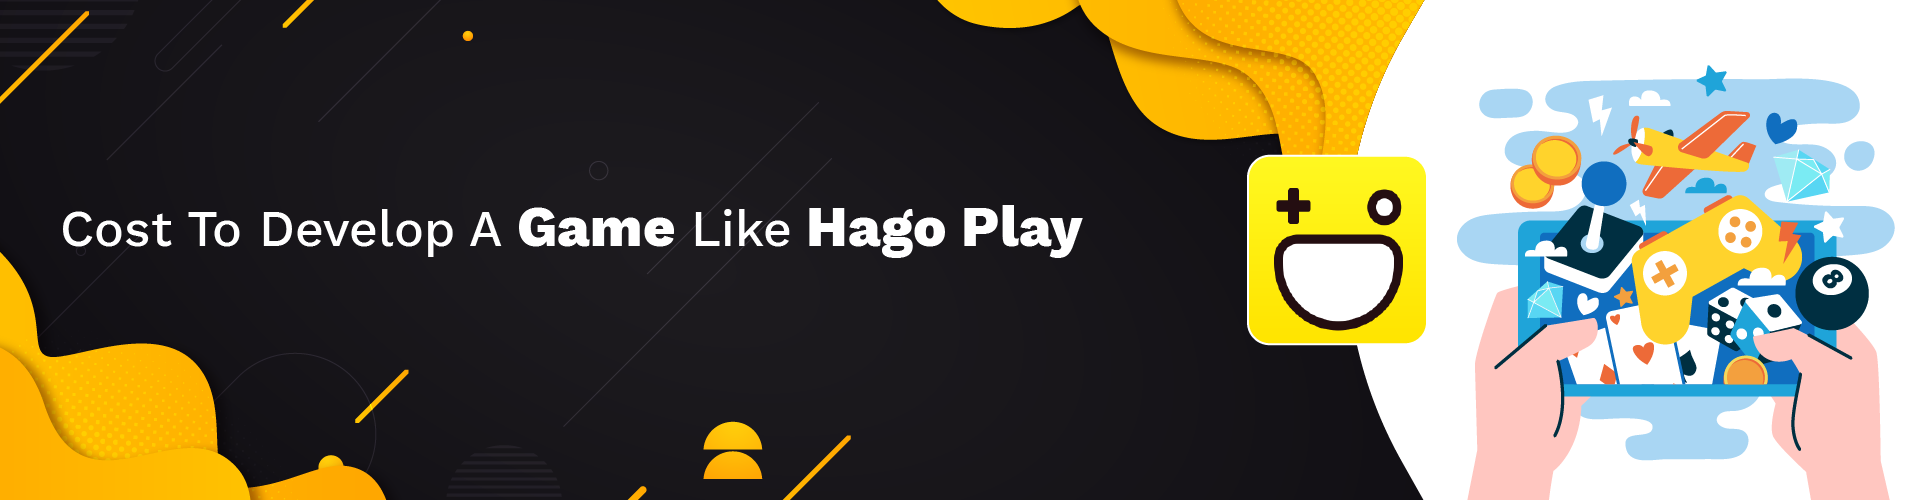 an app like hago play